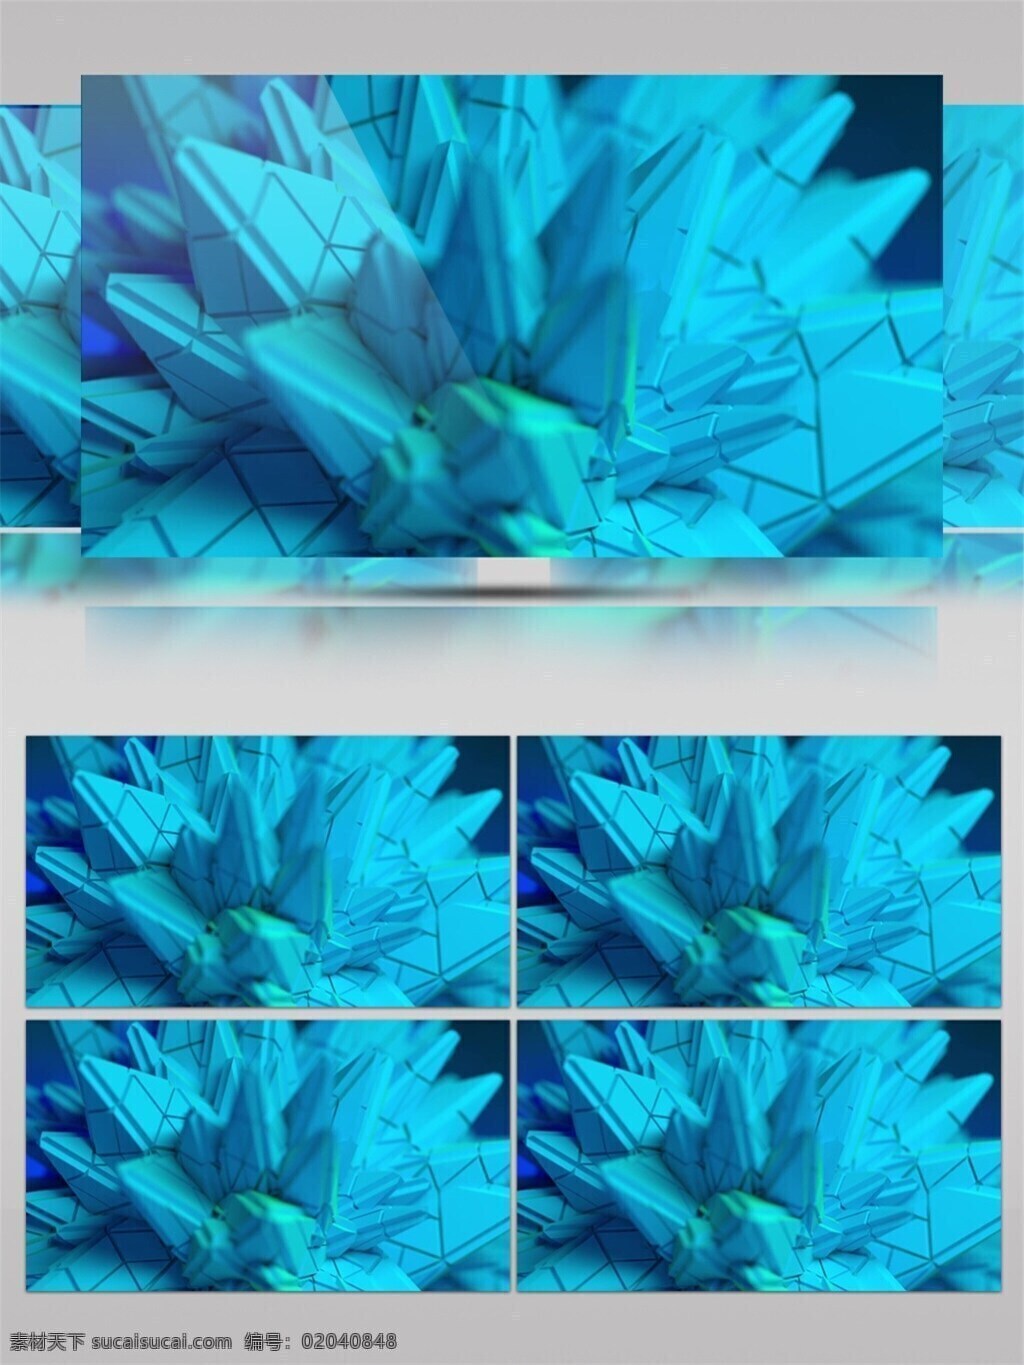 蓝色 岩石 冰晶 花朵 高清 视频 科技蓝色 晶体花朵 浪漫唯美 视频素材 动态视频素材